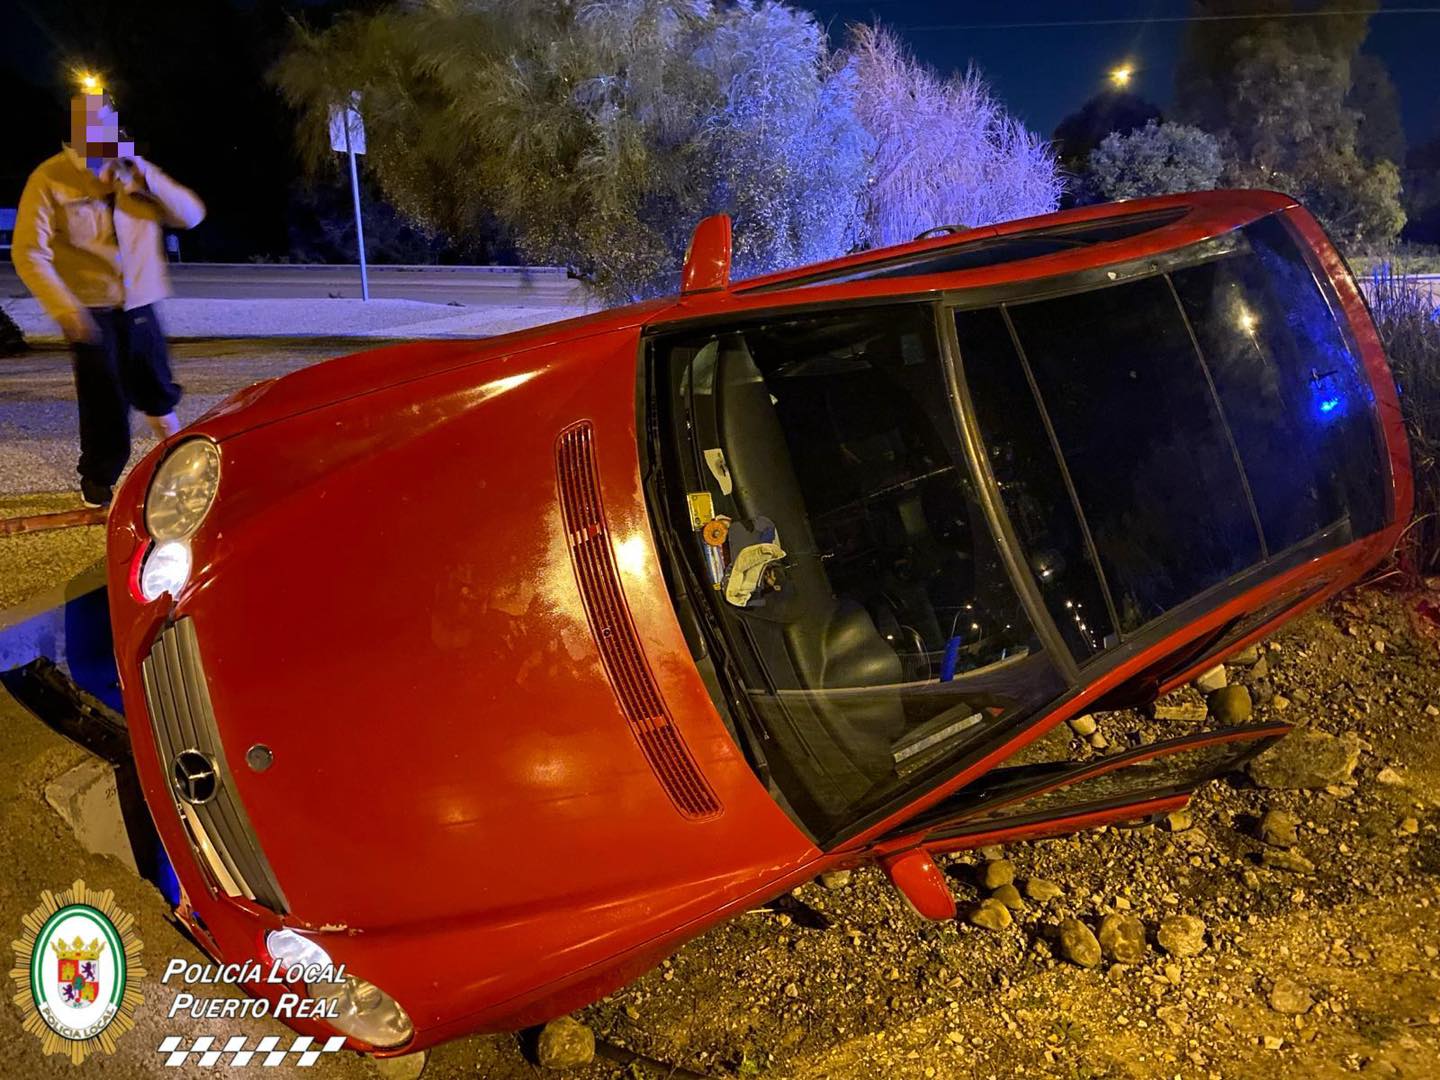 El coche quedó volcado en una calle de Puerto Real.